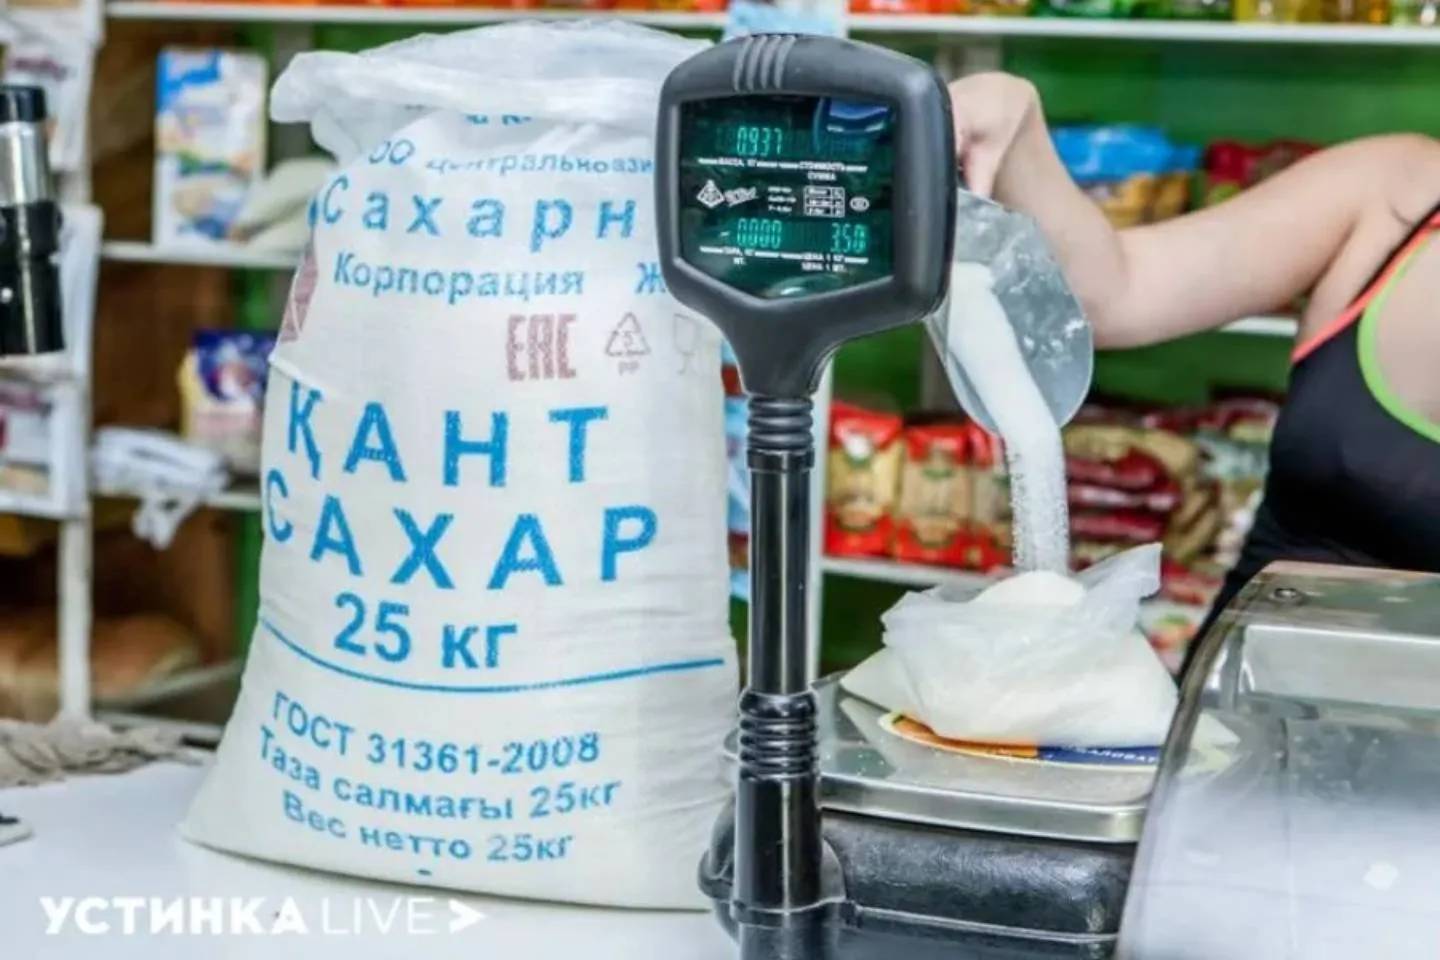 Новости Казахстана / Общество в Казахстане / На днях в регионы Казахстана завезут более 100 вагонов с сахаром